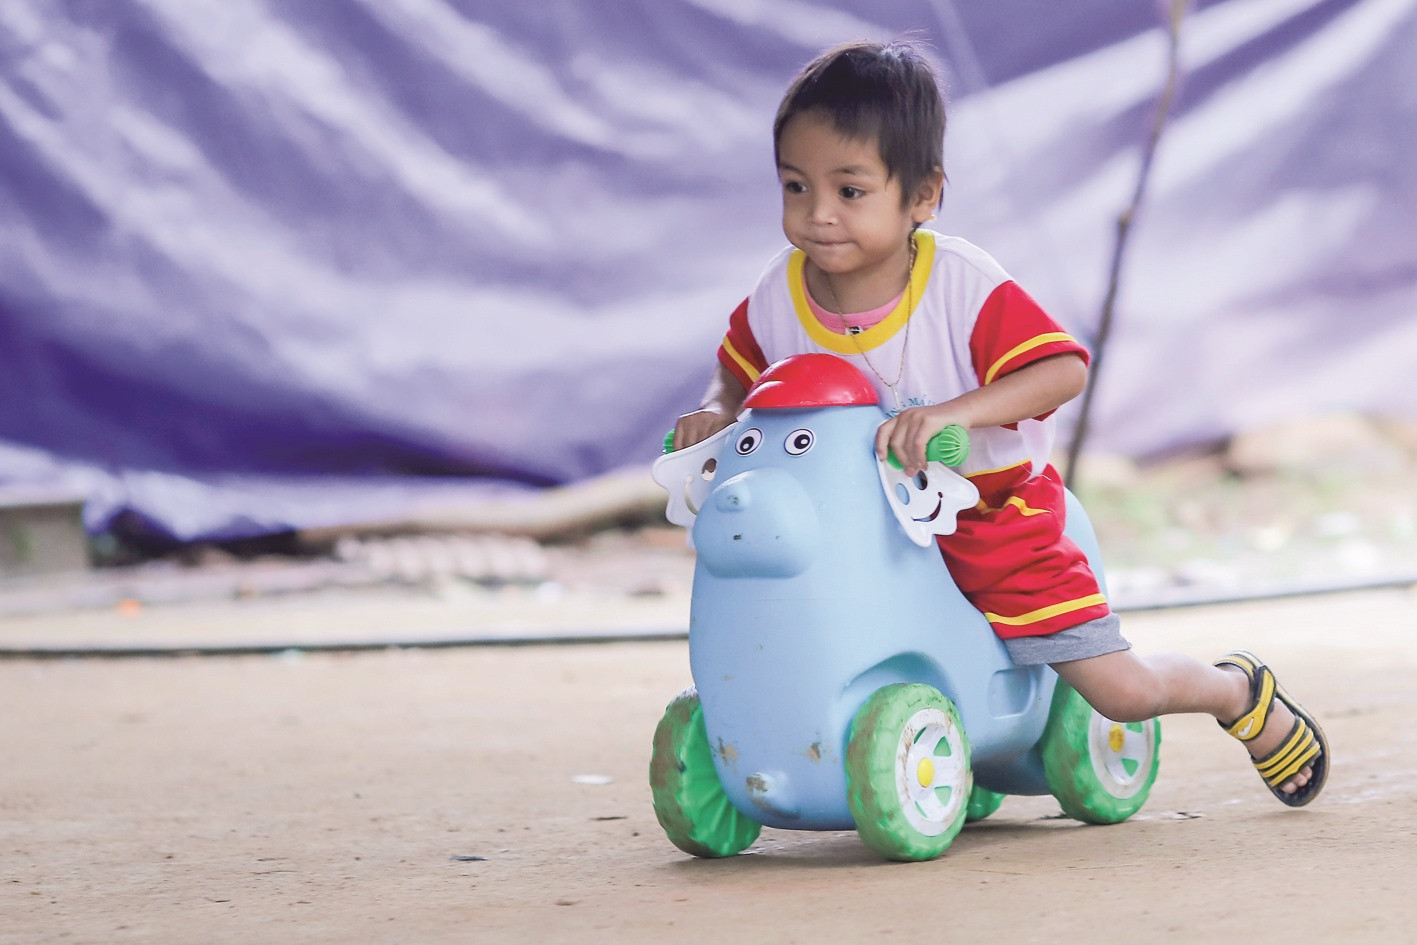 Em Hồ Quang Minh Hoài, 4 tuổi, chơi trong khu vực sân trường mầm non ở nóc ông Đề. Trong thảm họa sạt lở núi, mẹ và em của Hoài đều gặp bất hạnh.